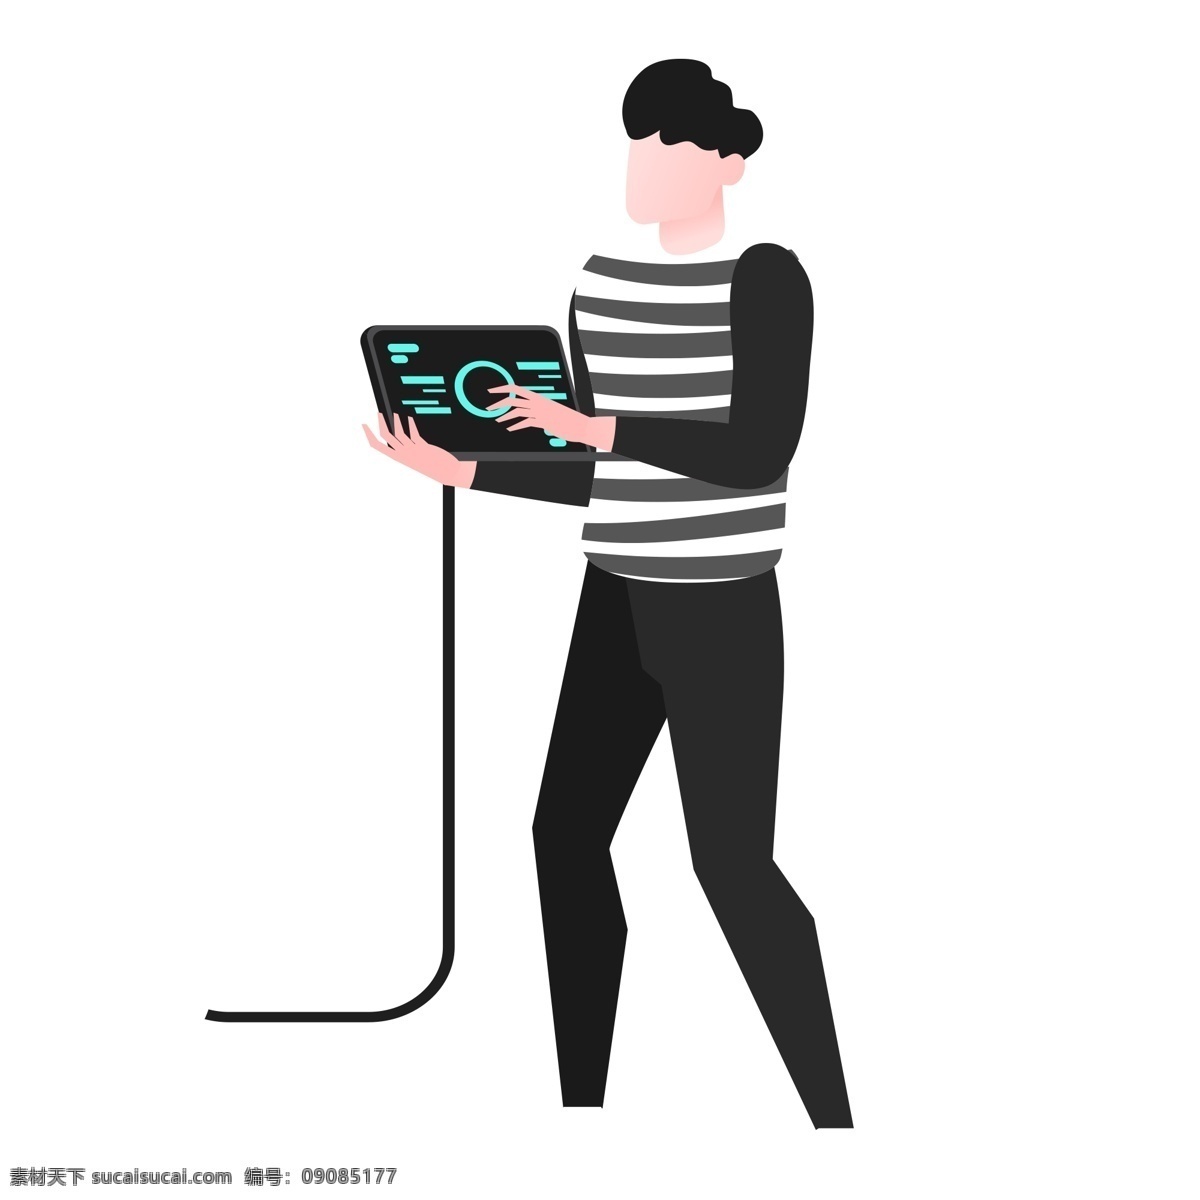 灰色 创意 操作 电脑 男孩 元素 穿着 衣服 服装 可爱 毛衣 卡通插画 线稿 电线 扁平化 科技 科幻